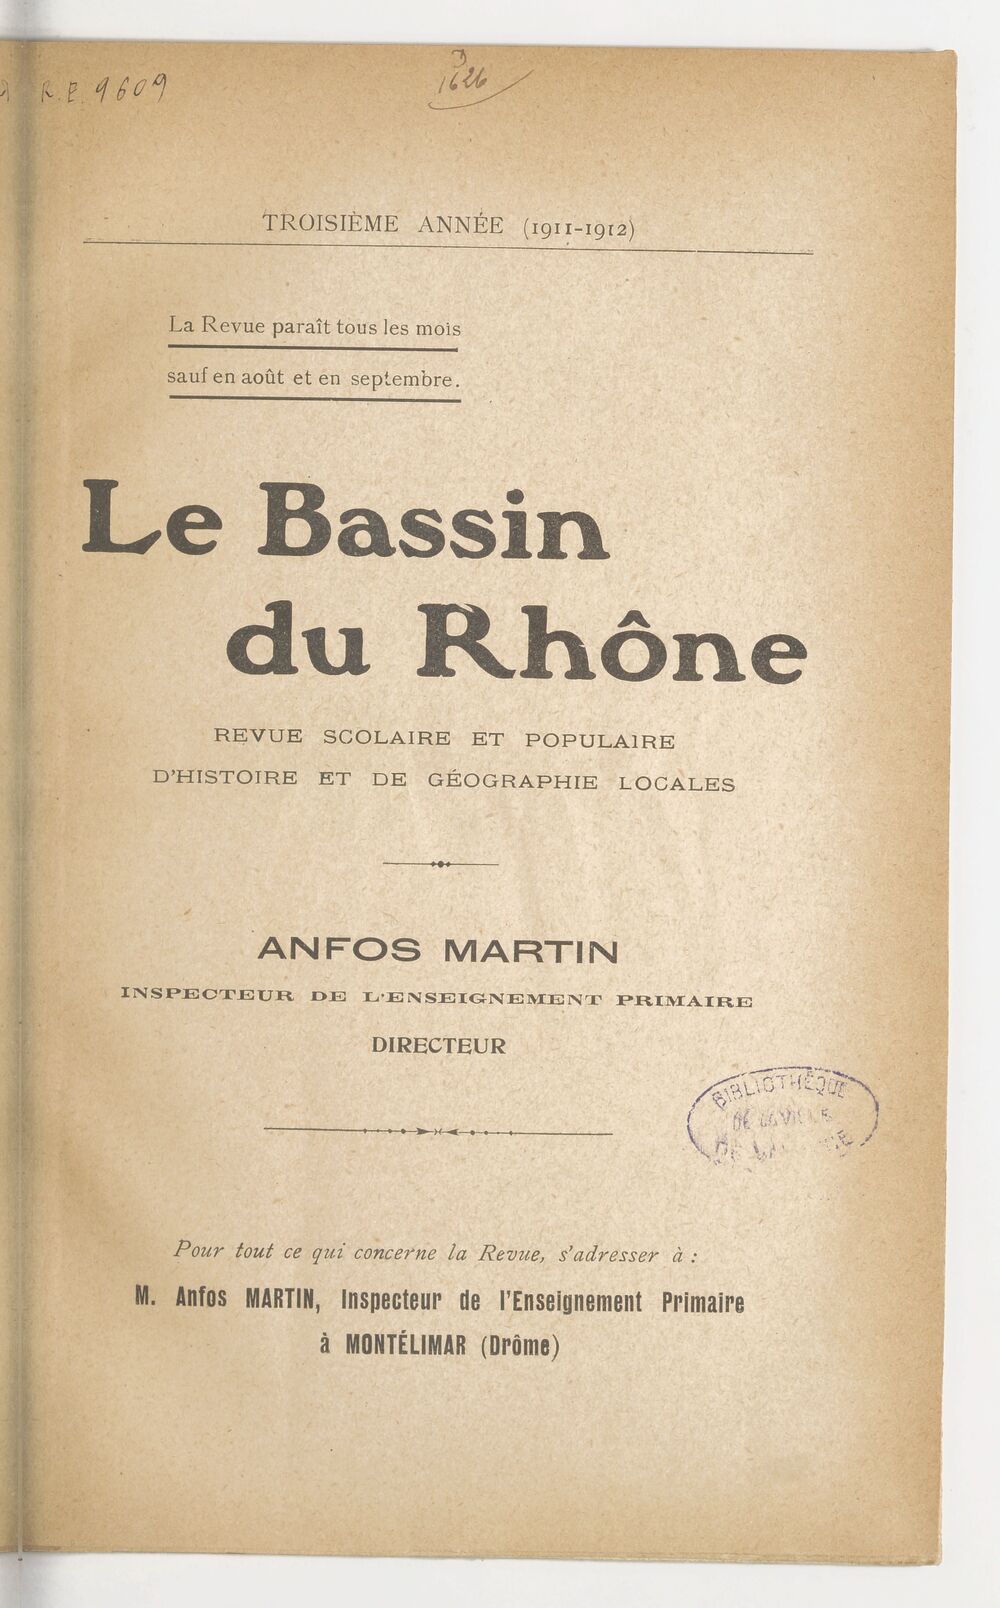 Le Bassin du Rhône : revue scolaire et populaire d'histoire et de géographie locales / Anfos Martin, inspecteur de l'enseignement scolaire, directeur